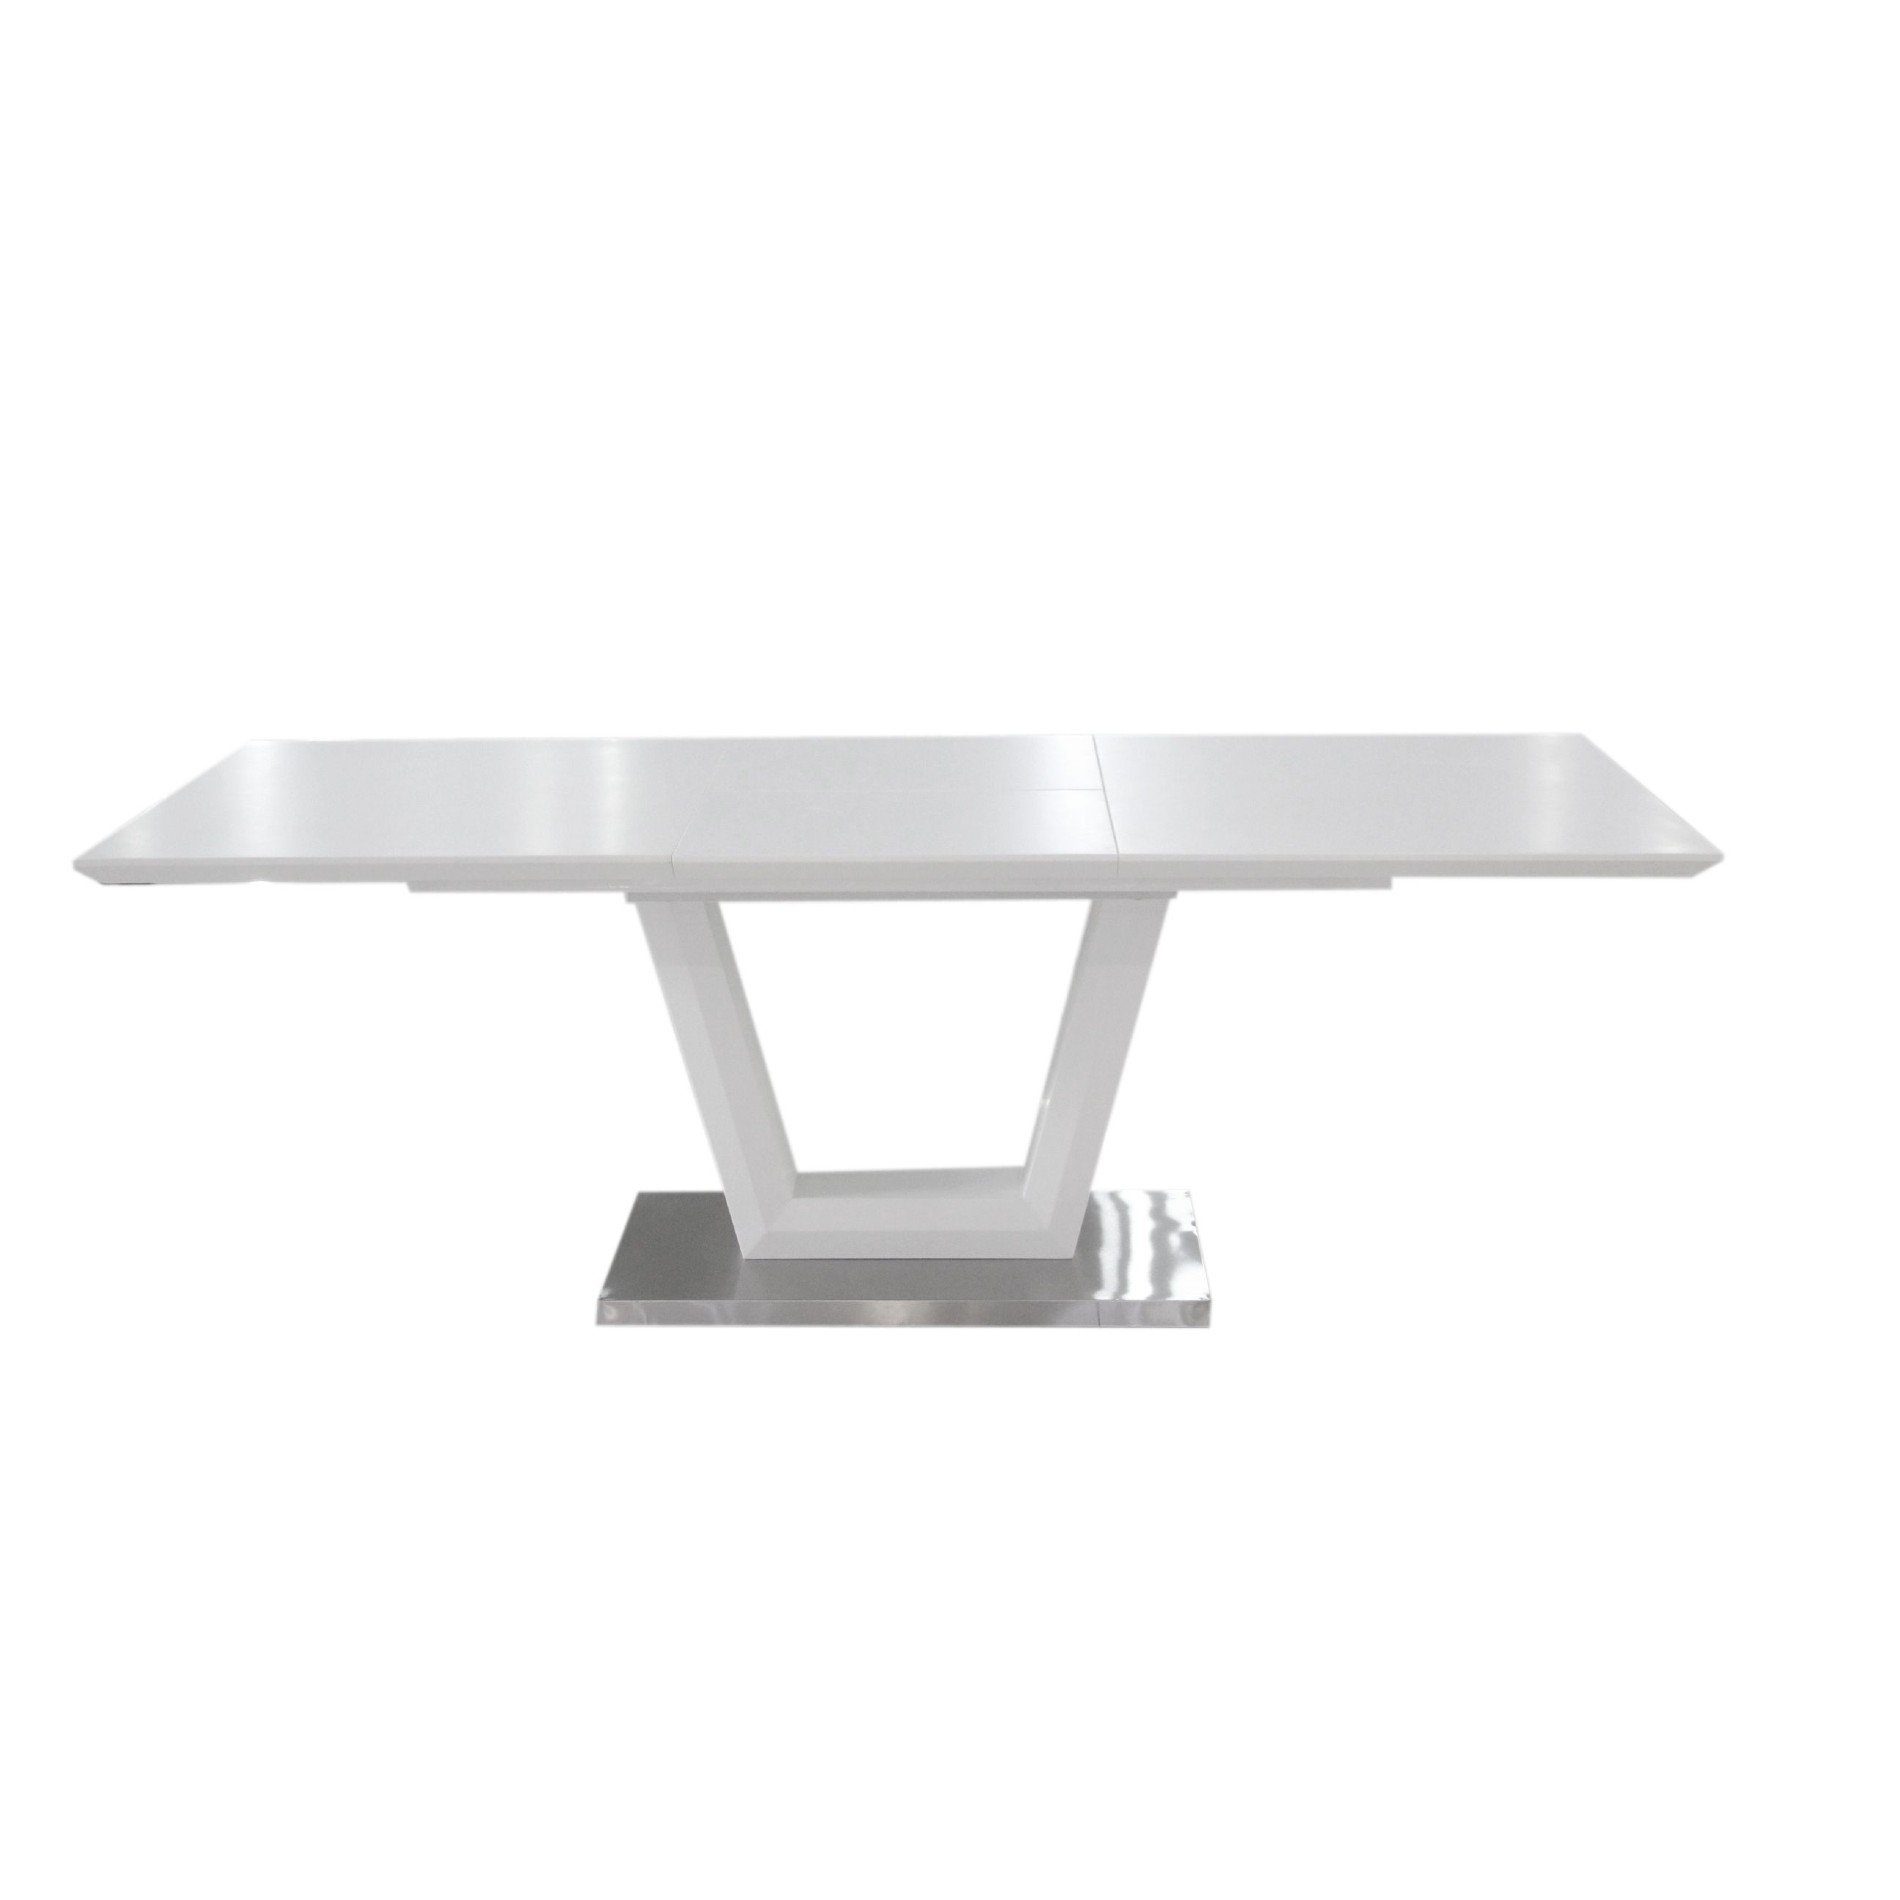 Trendstore „Merrit“ Esstisch mit Tischplatte und Gestell aus MDF weiß und Glas und Gestell aus Edelstahl gebürstet mit Einlegeplatte